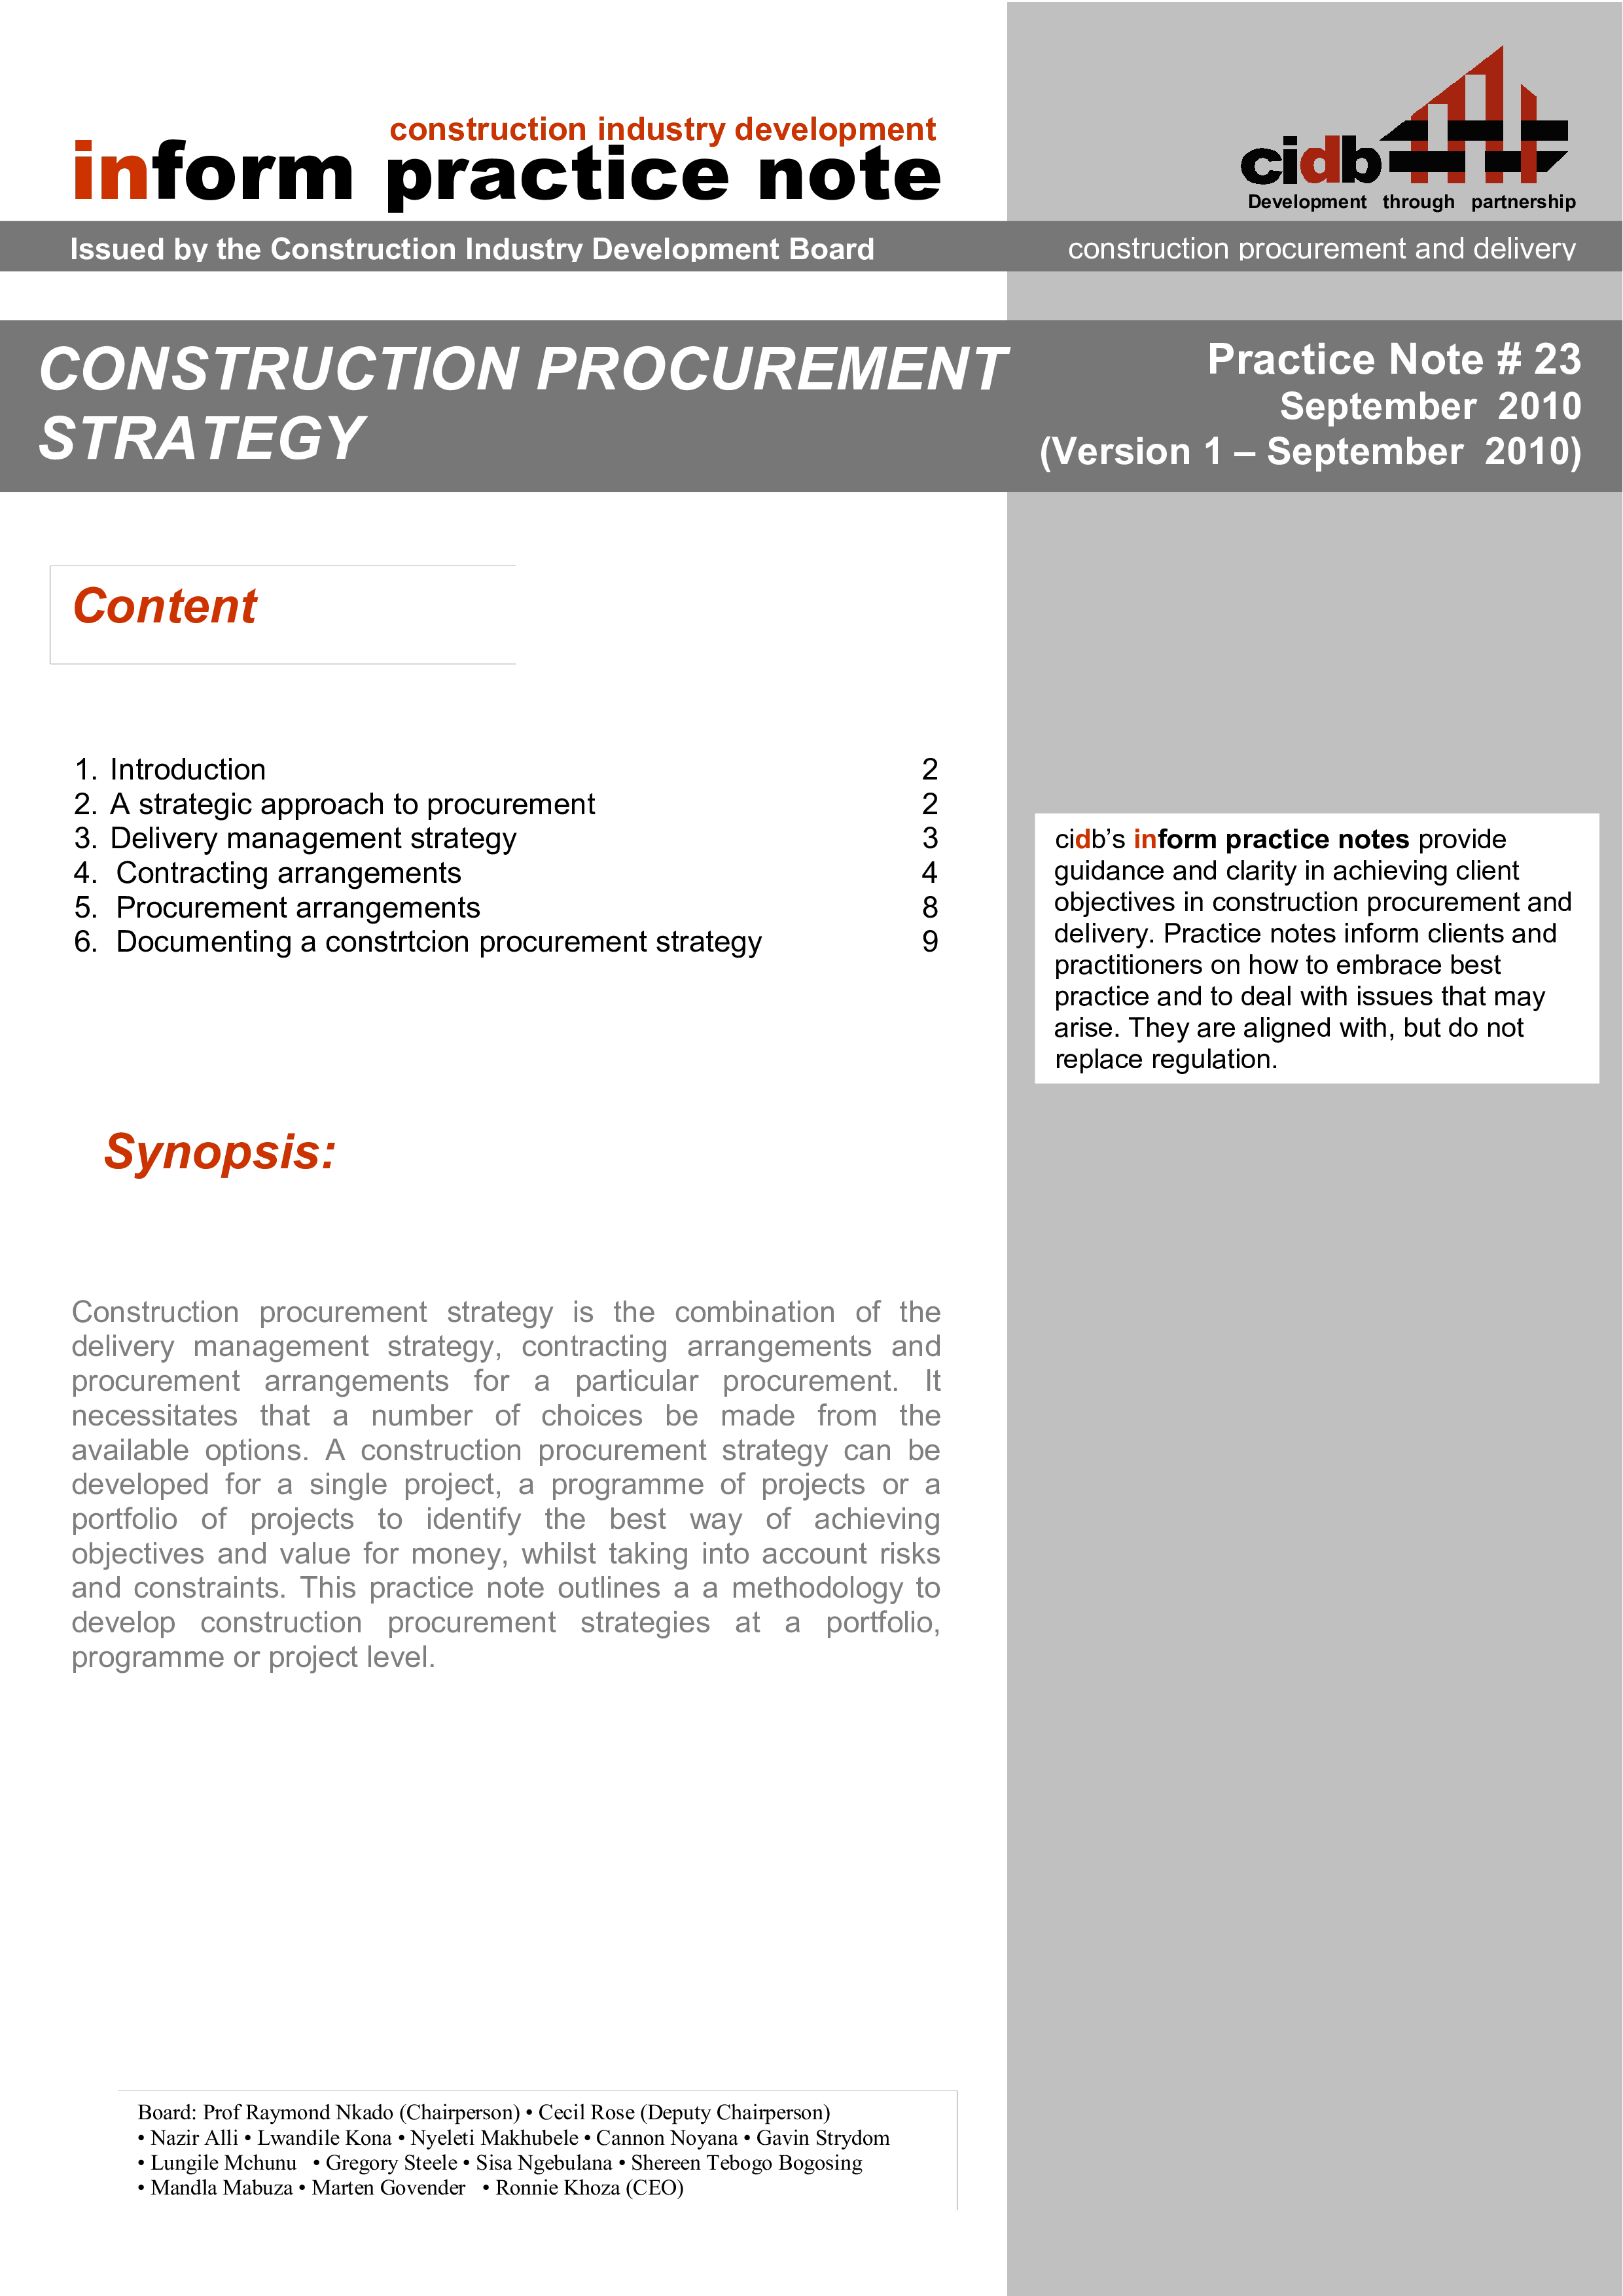 construction procurement strategy plantilla imagen principal